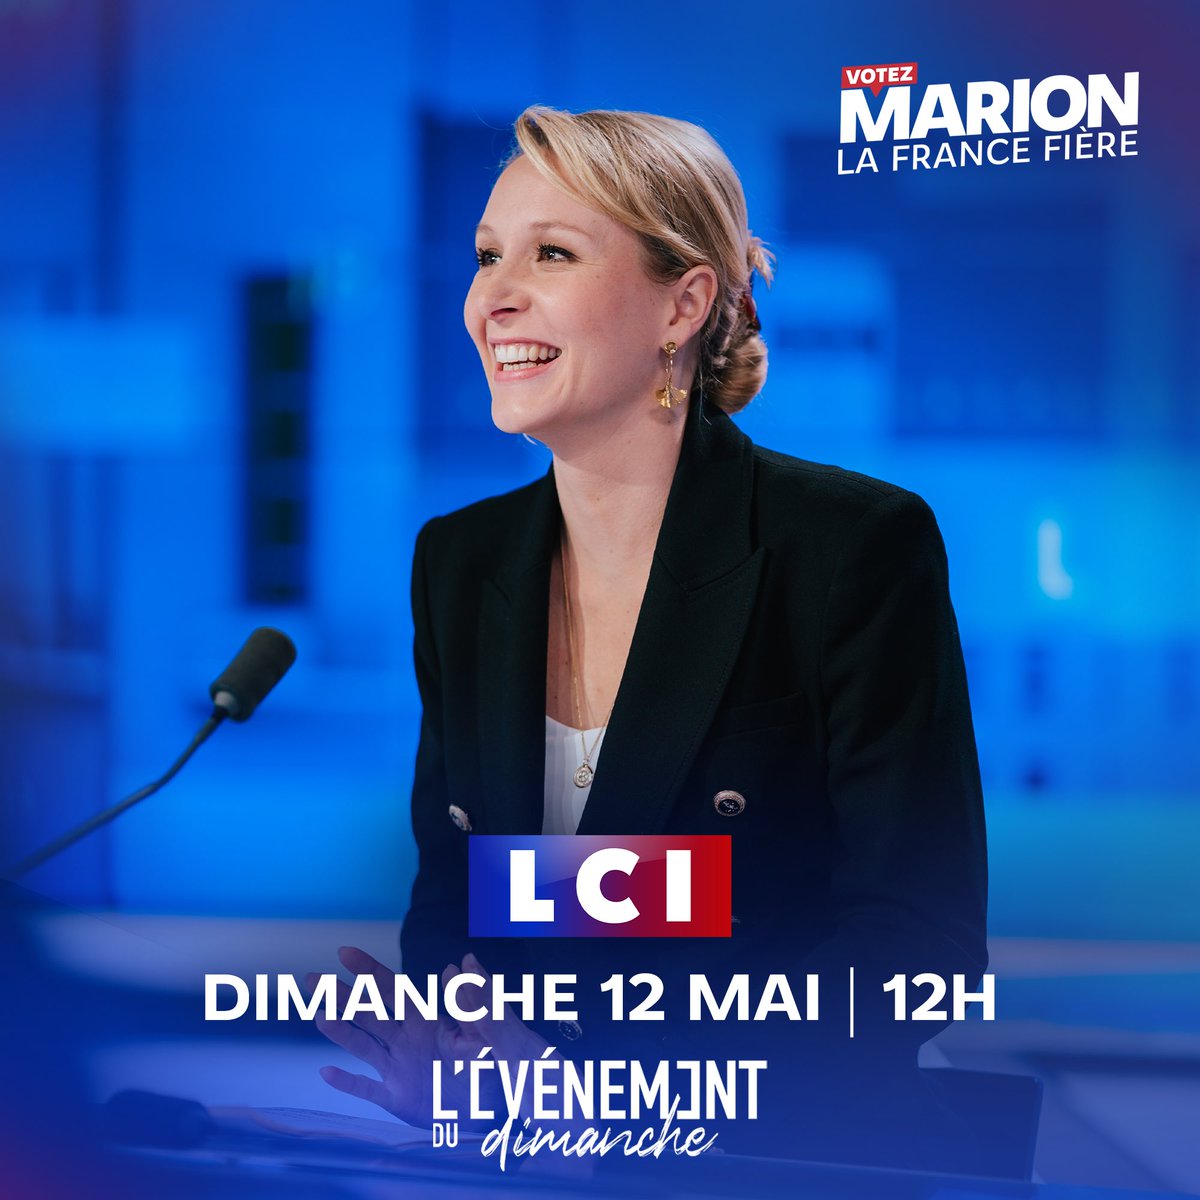 📺 Je vous donne rendez-vous ce dimanche 12 mai à midi sur LCI. #LevenementDuDimanche #VotezMarion